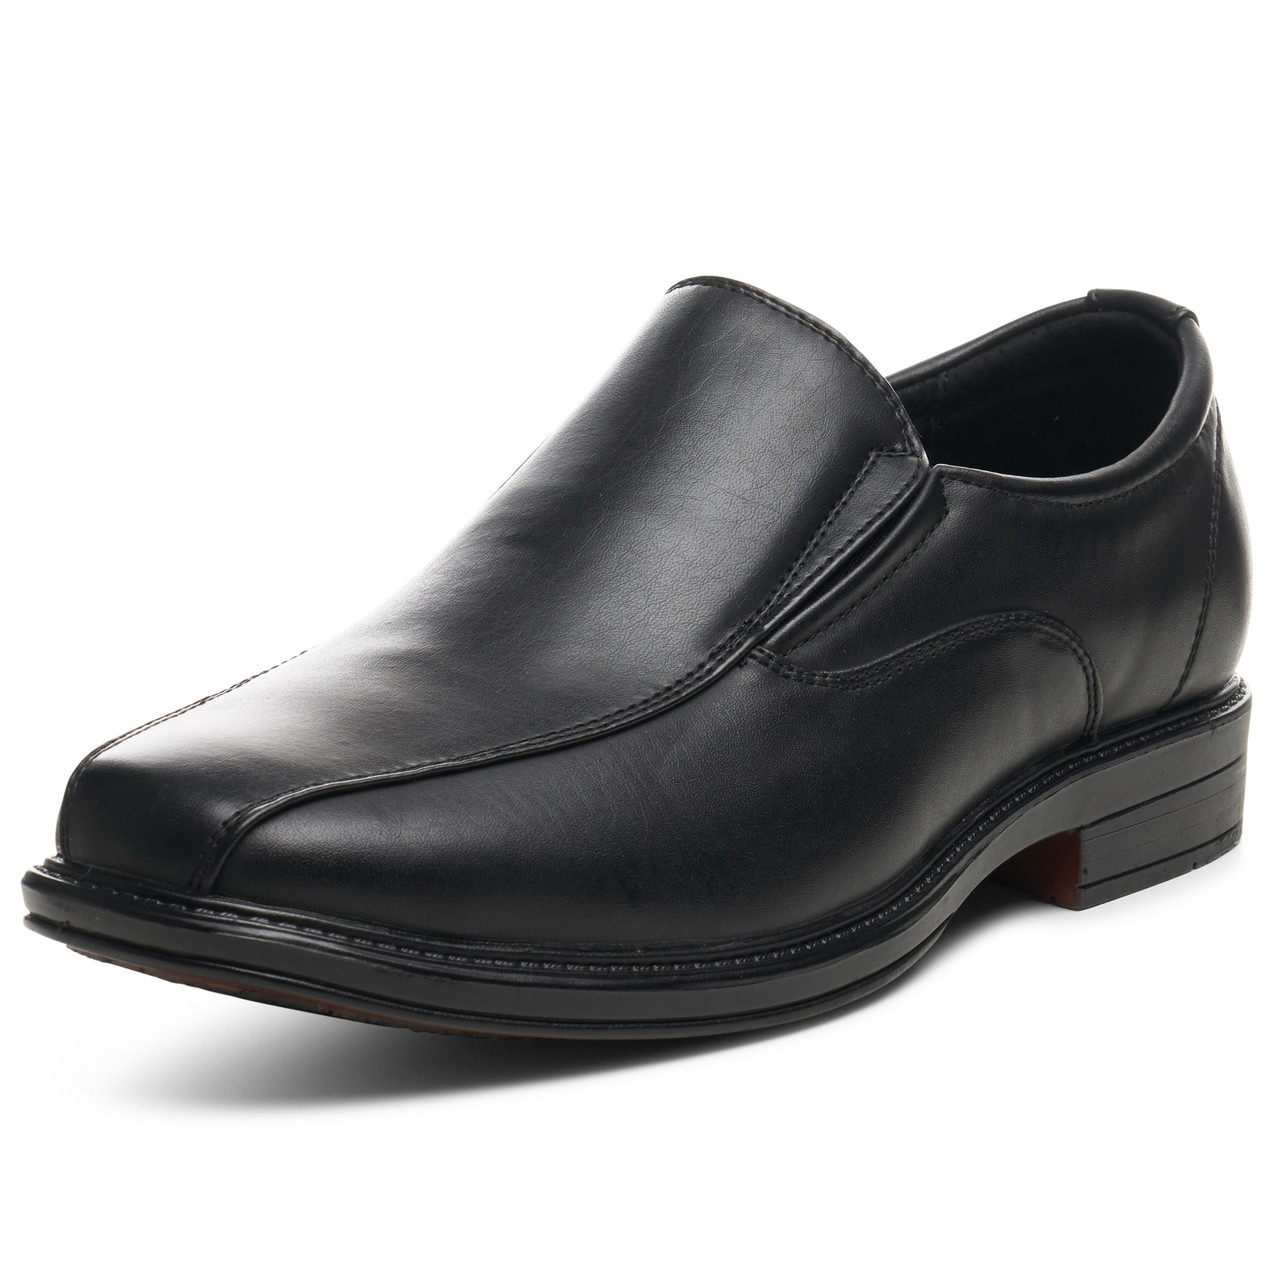 men's dressy slip on shoes